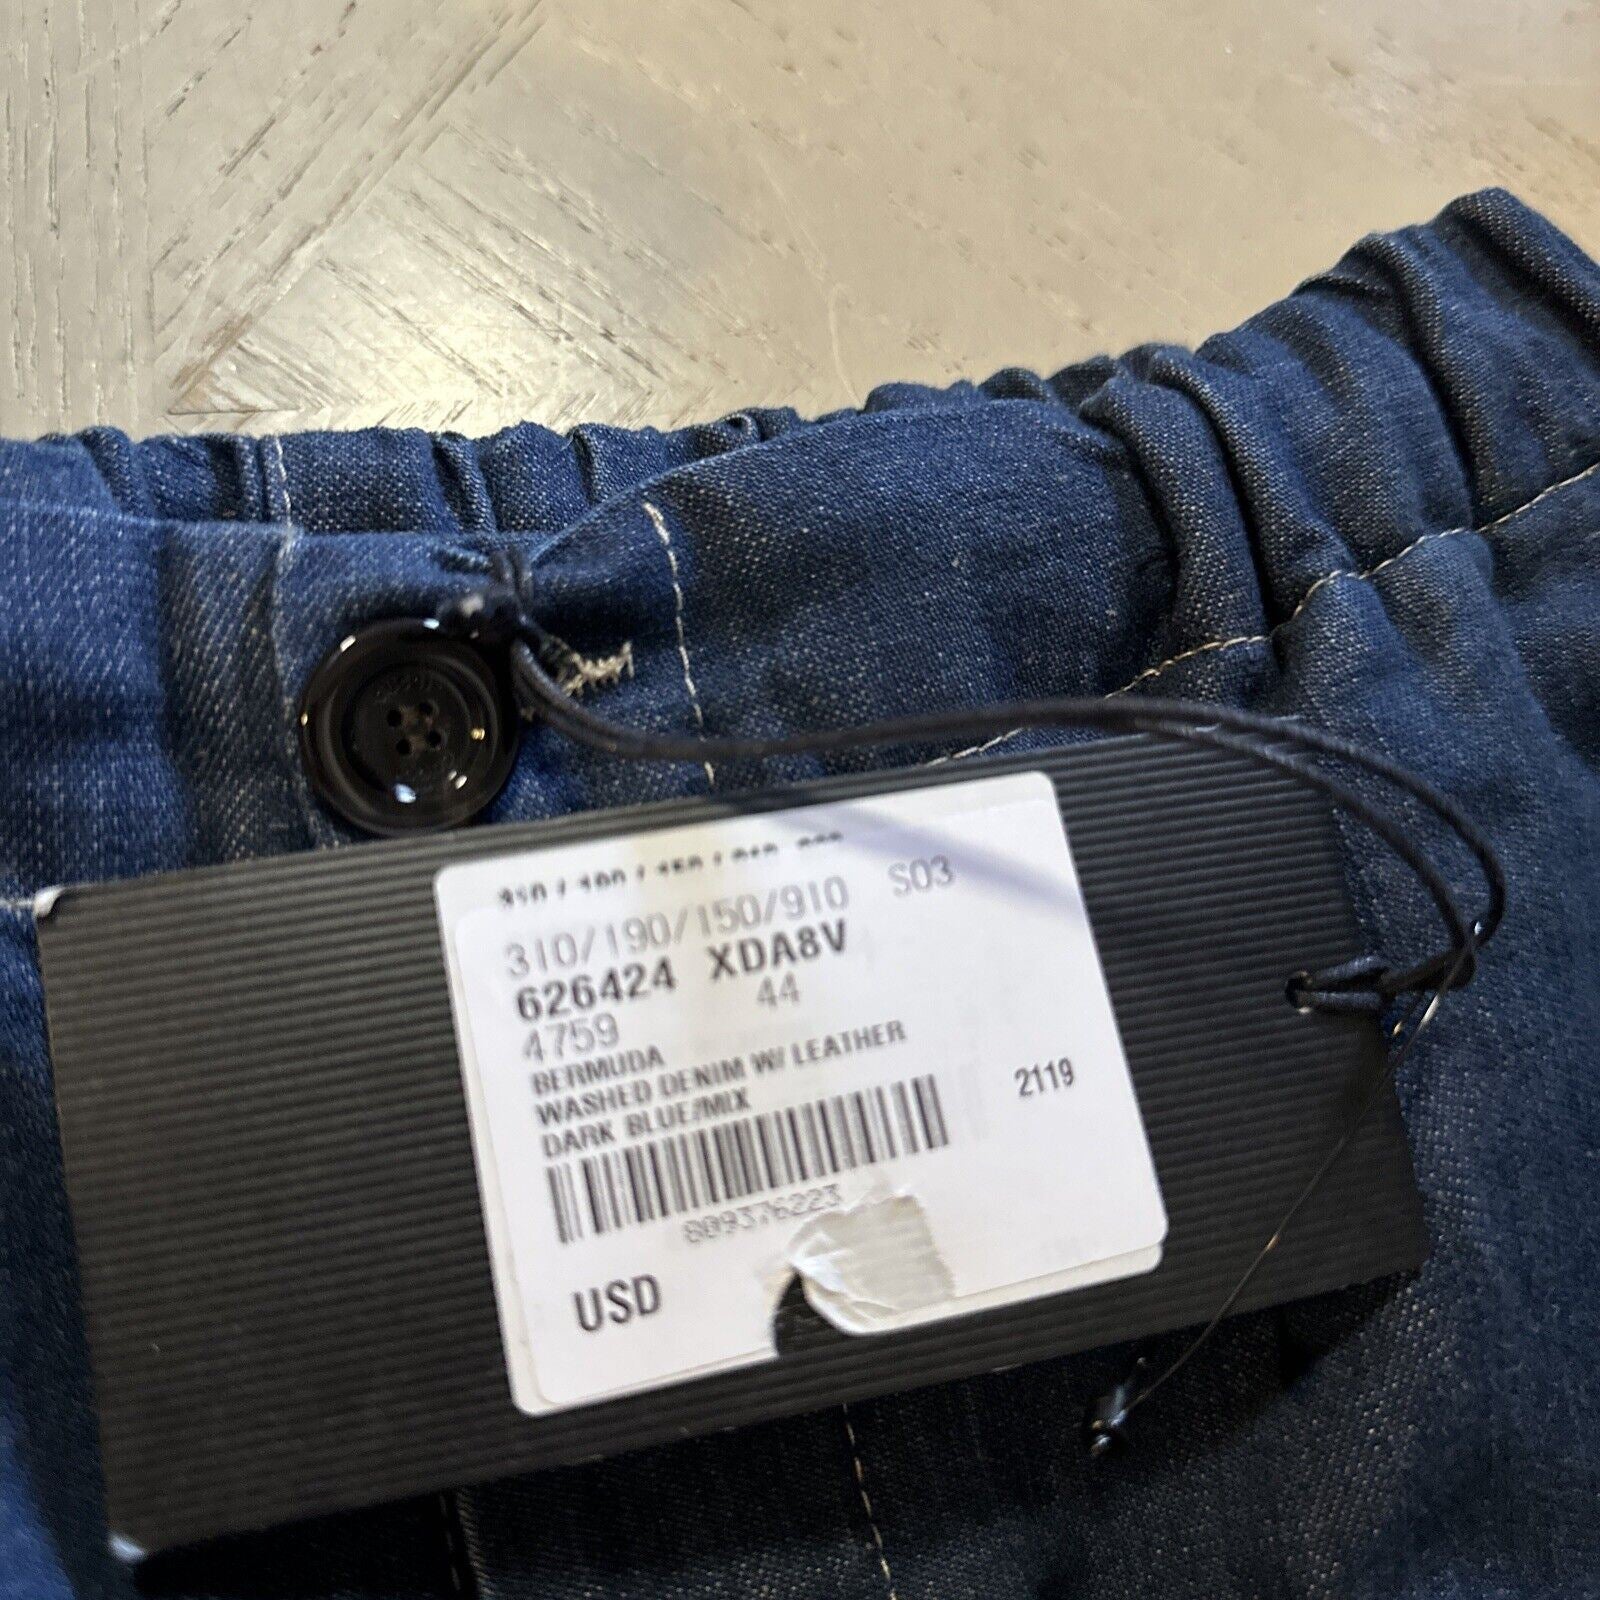 Neu mit Etikett: 1.250 $ Gucci Herren-Shorts aus gewaschenem Denim mit GG-Leder, DK-Blau, 28 US/44 Eu